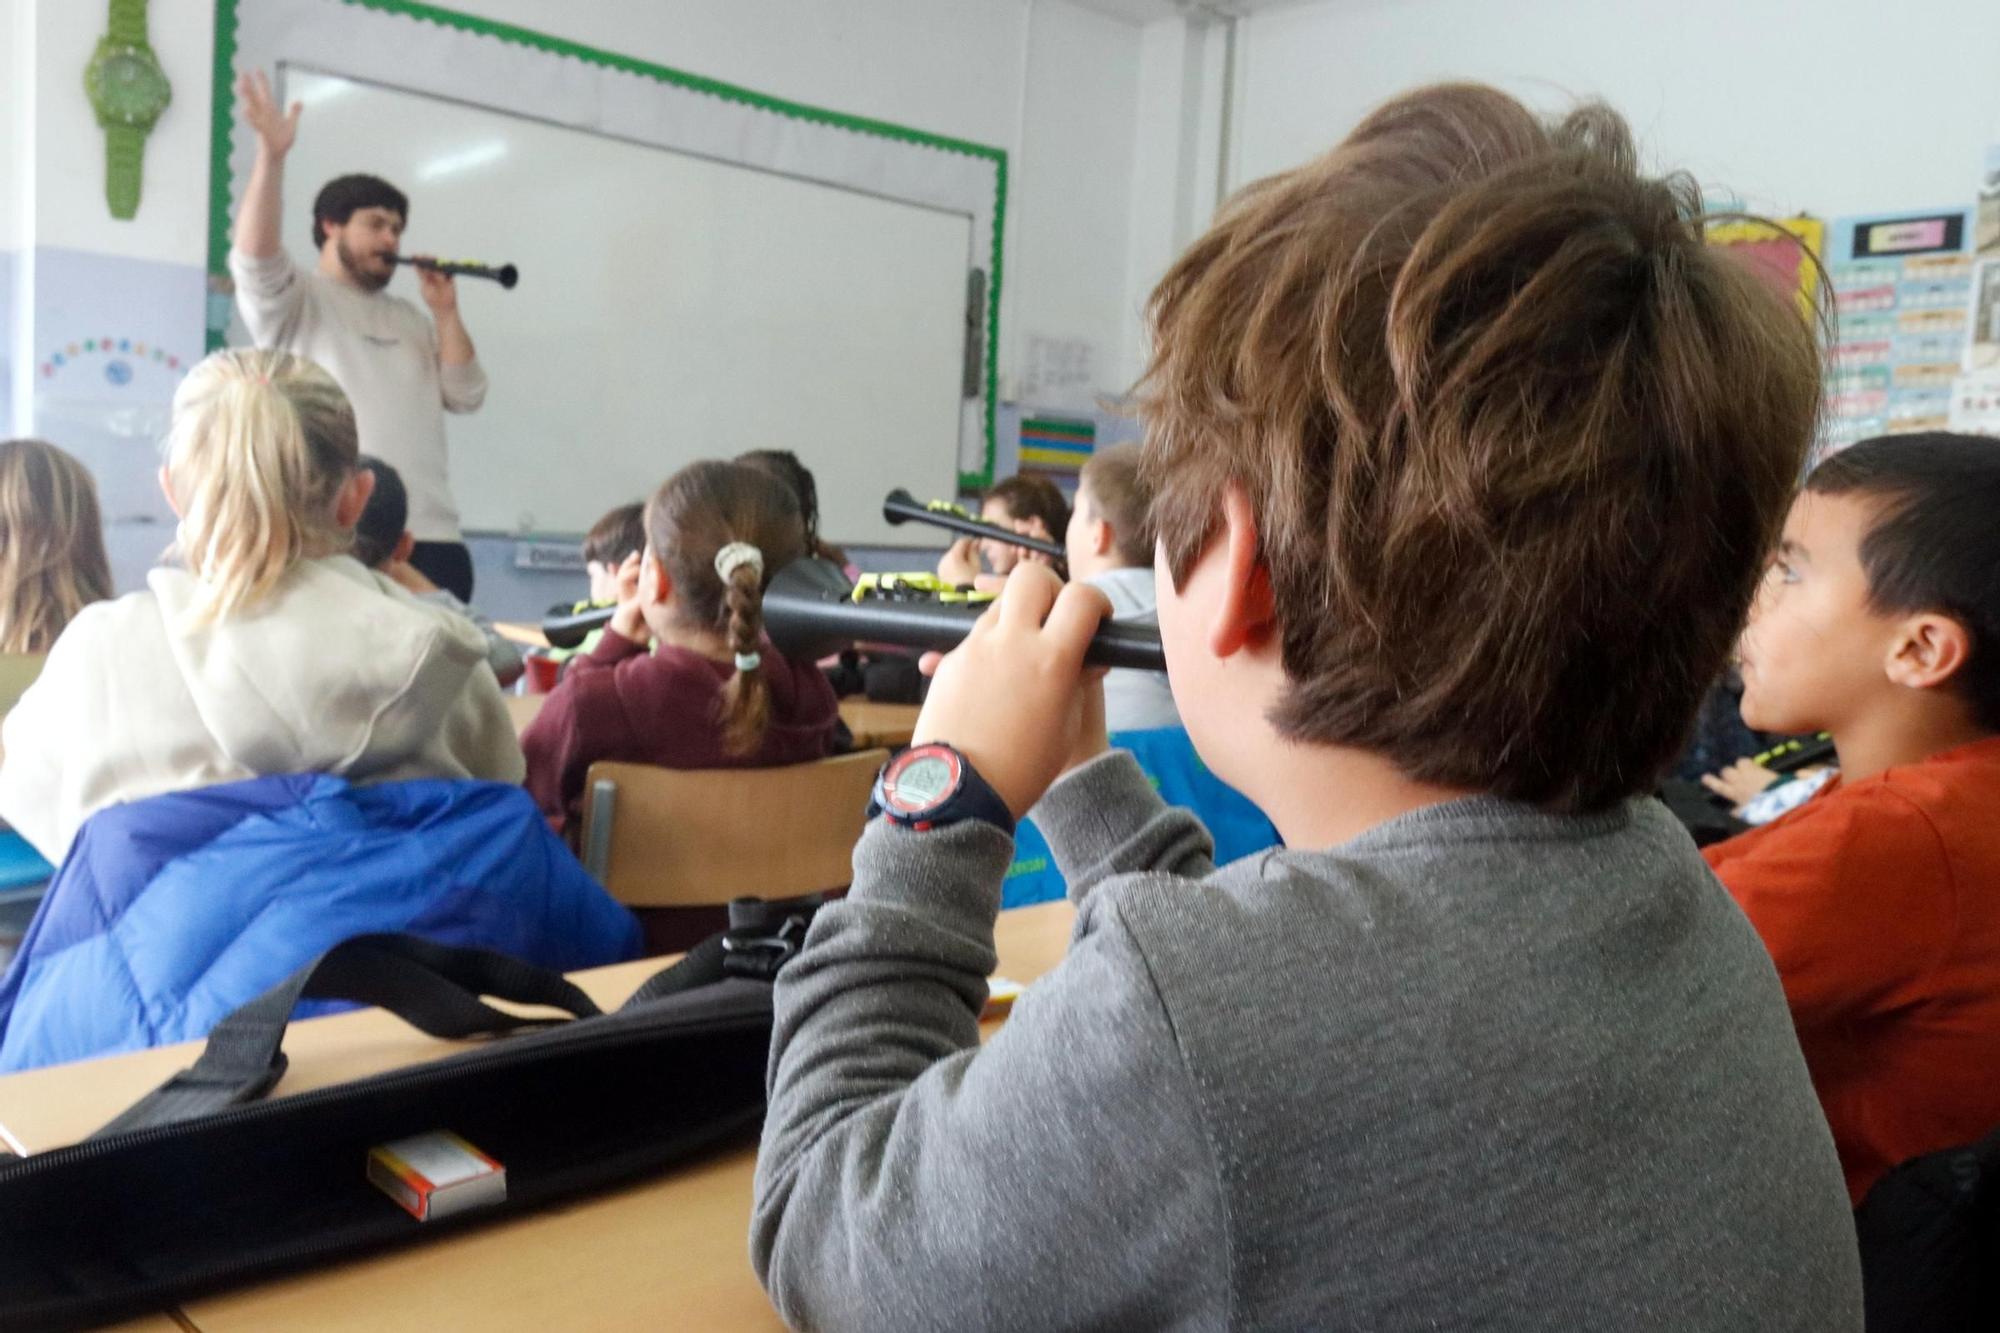 La cobla arriba a les escoles de la Bisbal d'Empordà amb instruments impresos en 3D